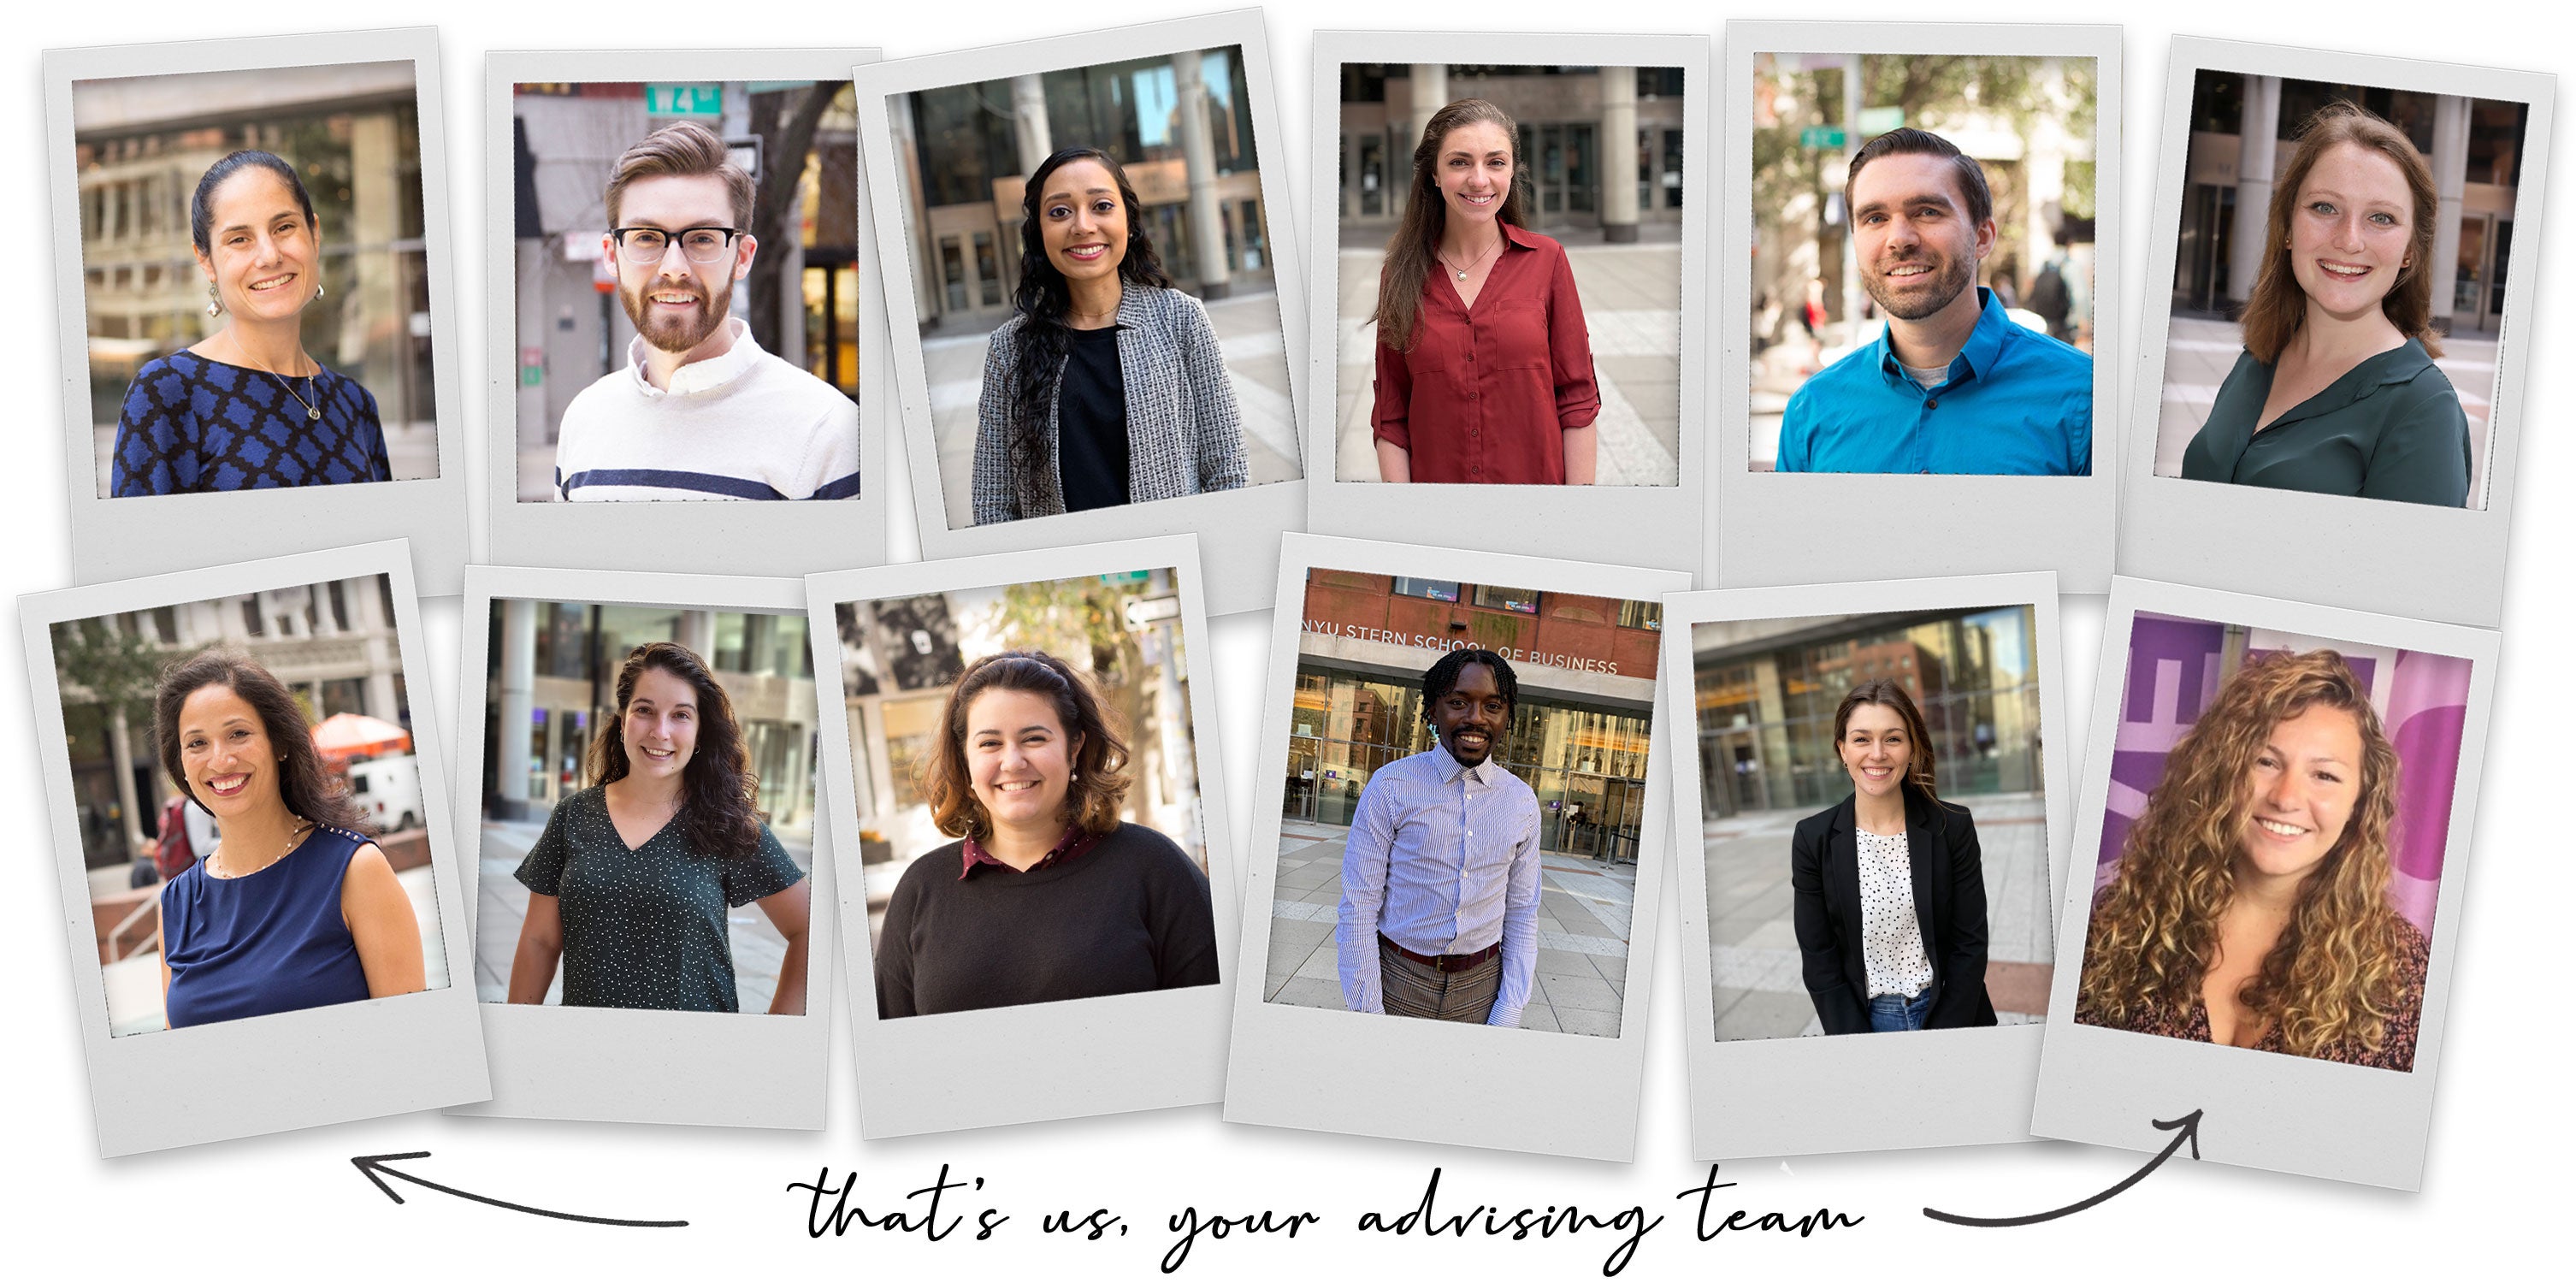 UC Academic Advising Team Photo